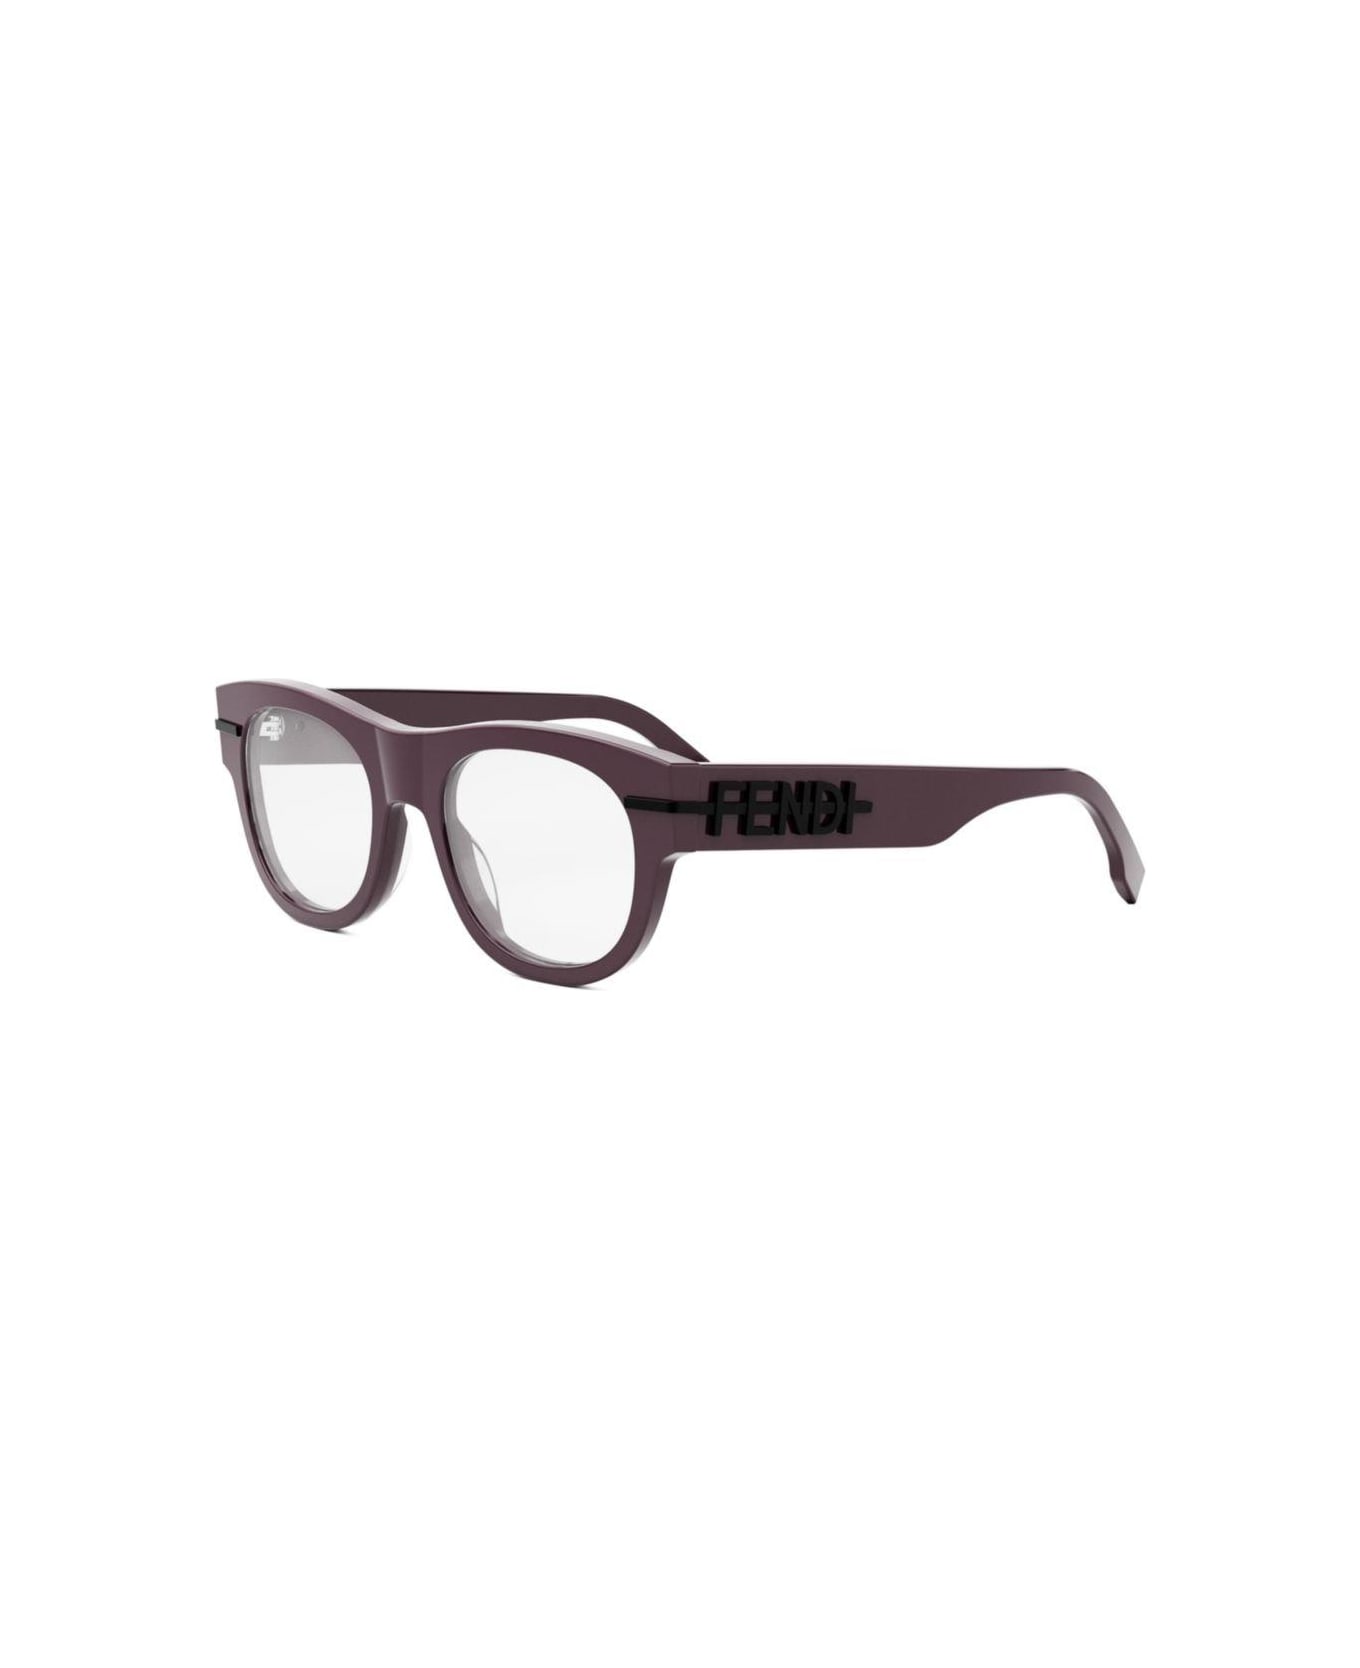 Fendi Eyewear Round-frame Glasses - 069 アイウェア